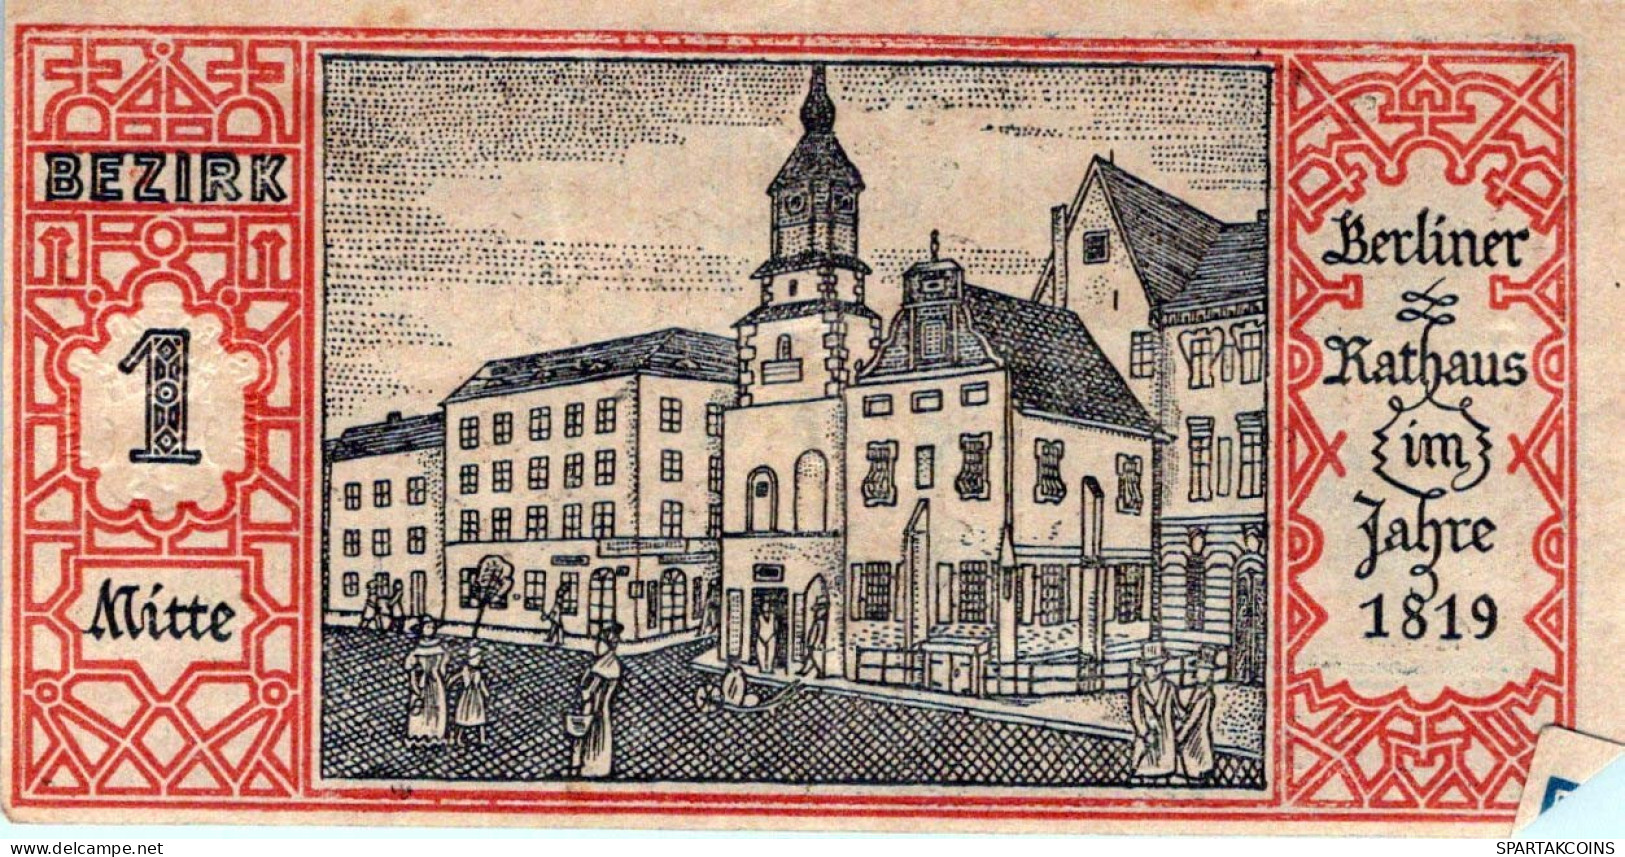 50 PFENNIG 1921 Stadt BERLIN DEUTSCHLAND Notgeld Banknote #PG387 - [11] Local Banknote Issues